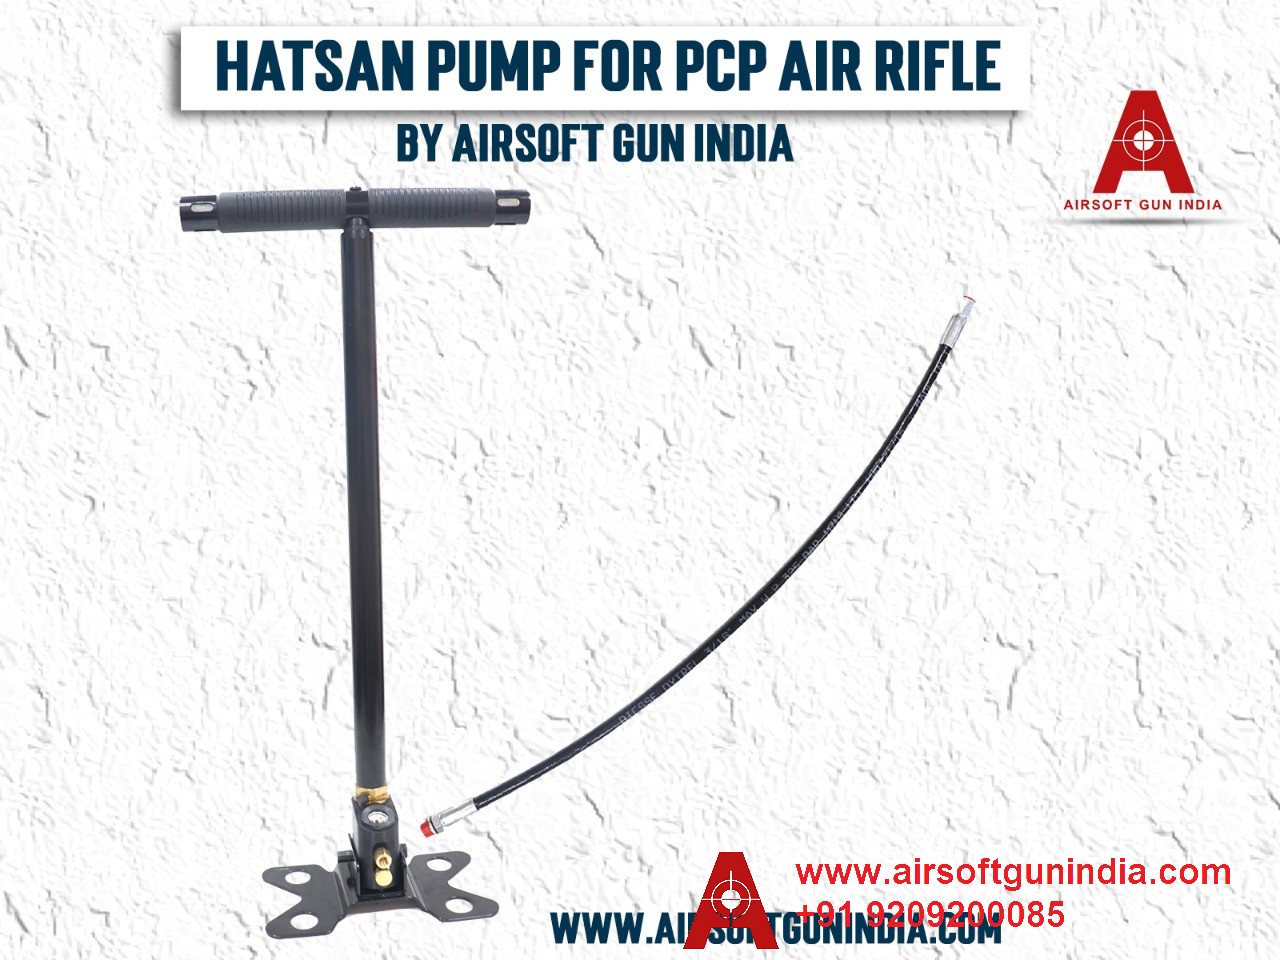 Hatsan Hand Pump For PCP Air Rifle By Airsoft Gun India